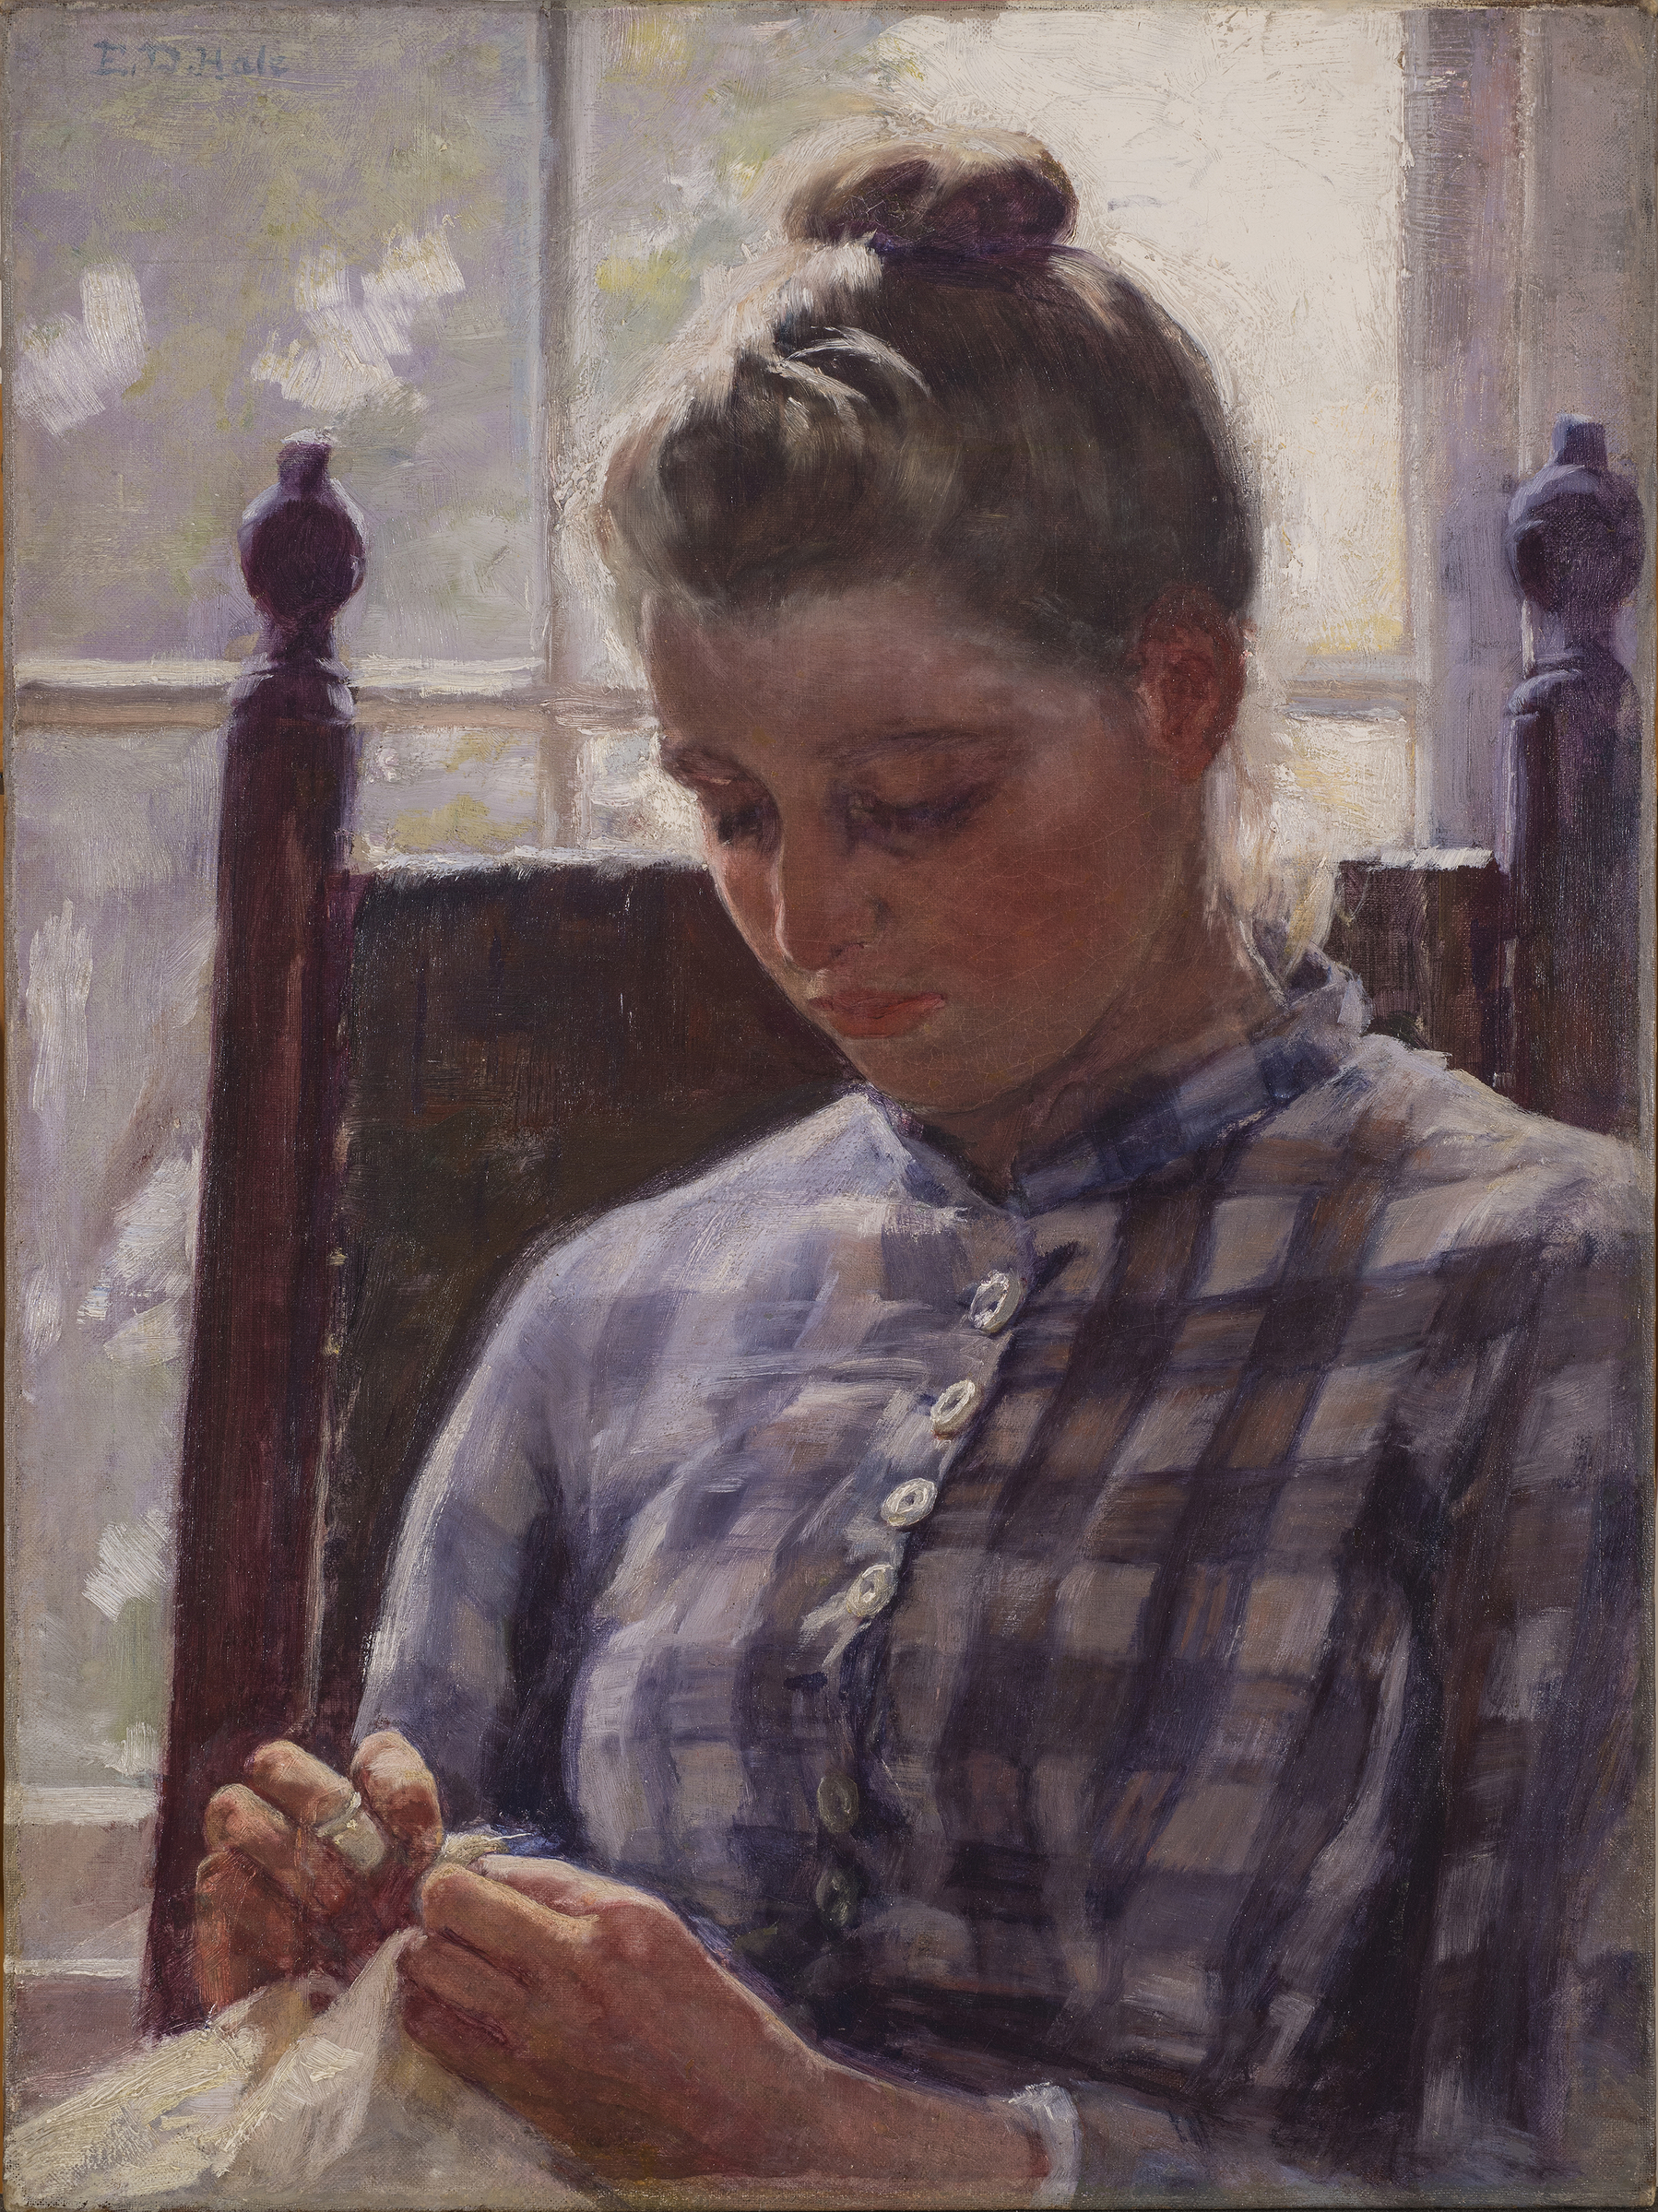 June by Ellen Day Hale - v. 1893 - 24 x 18 1/8 pouces 